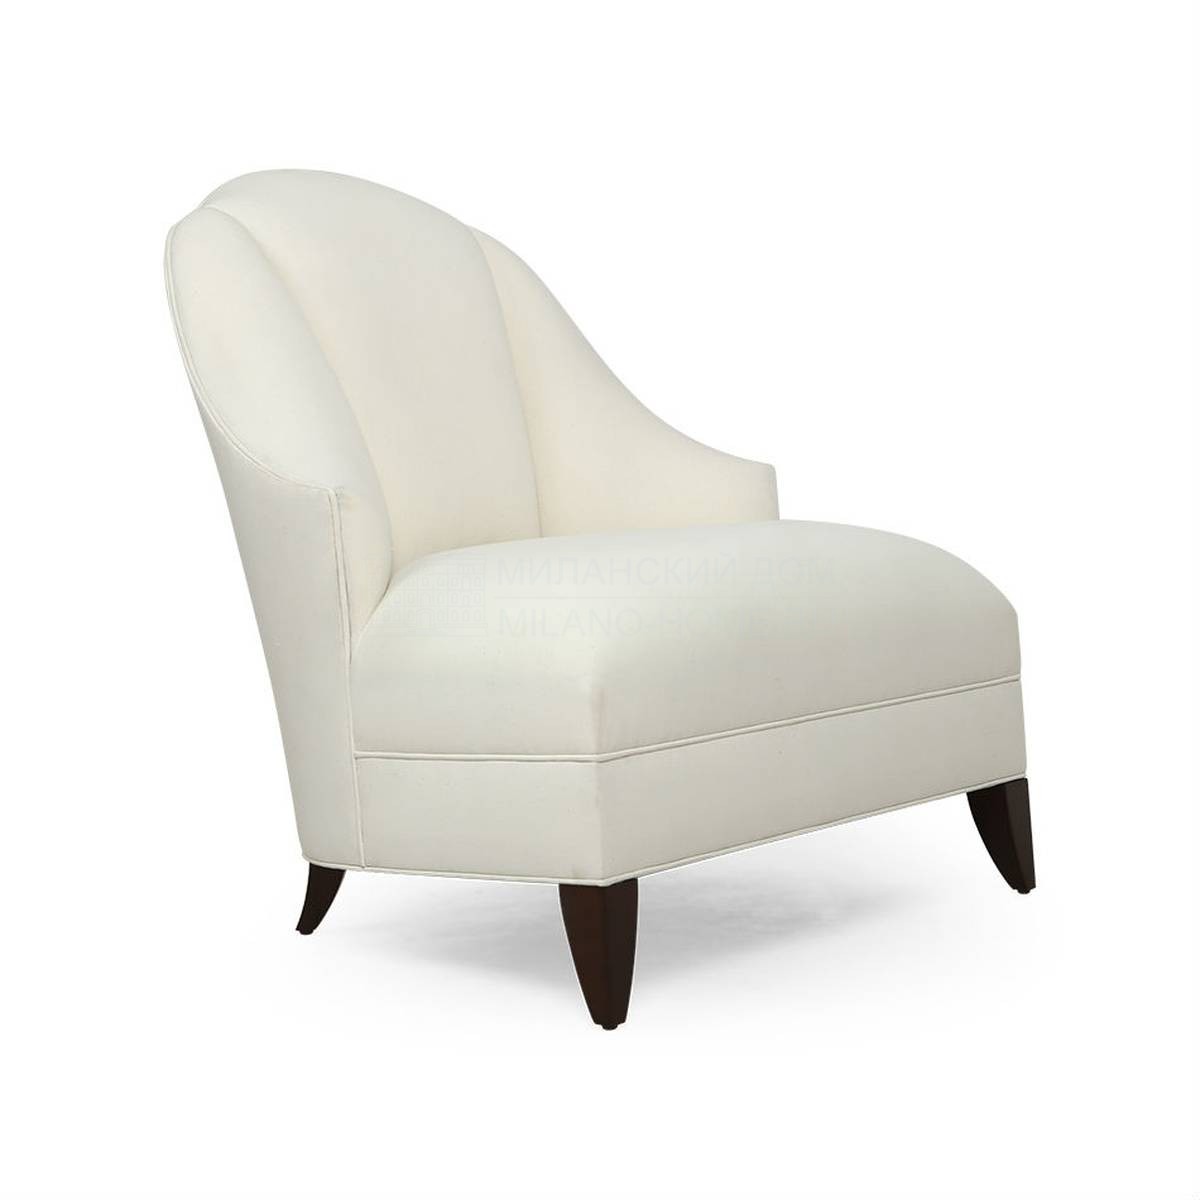 Кожаное кресло Angeline armchair из США фабрики CHRISTOPHER GUY